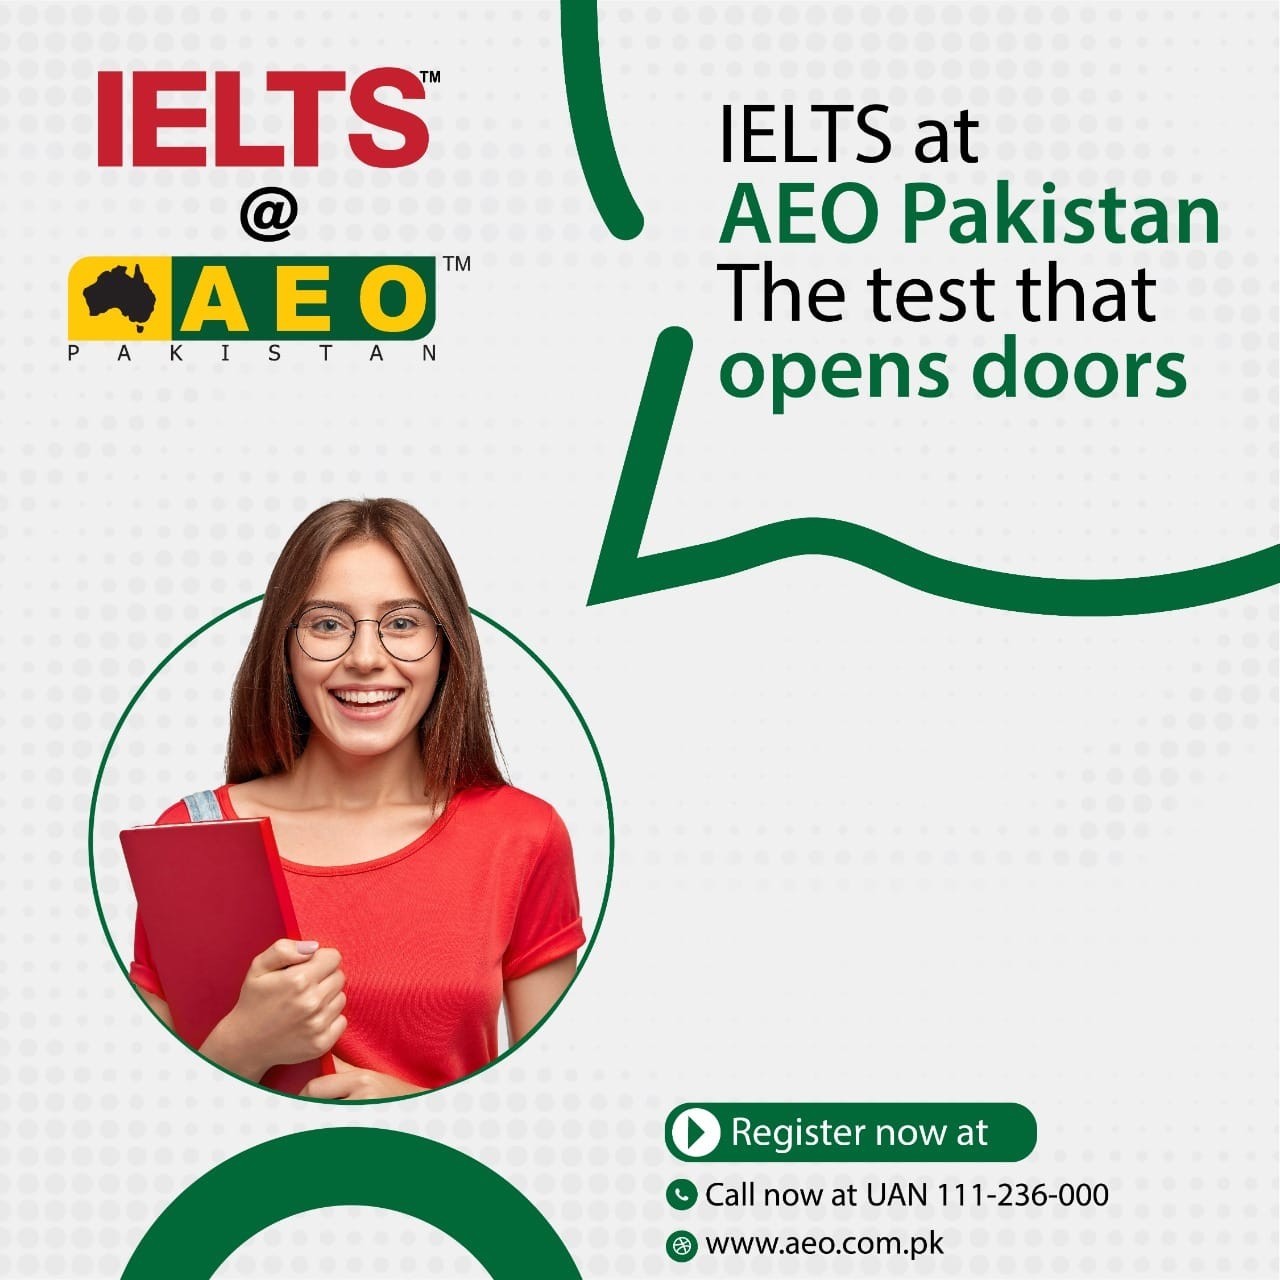 IELTS at AEO Pakistan